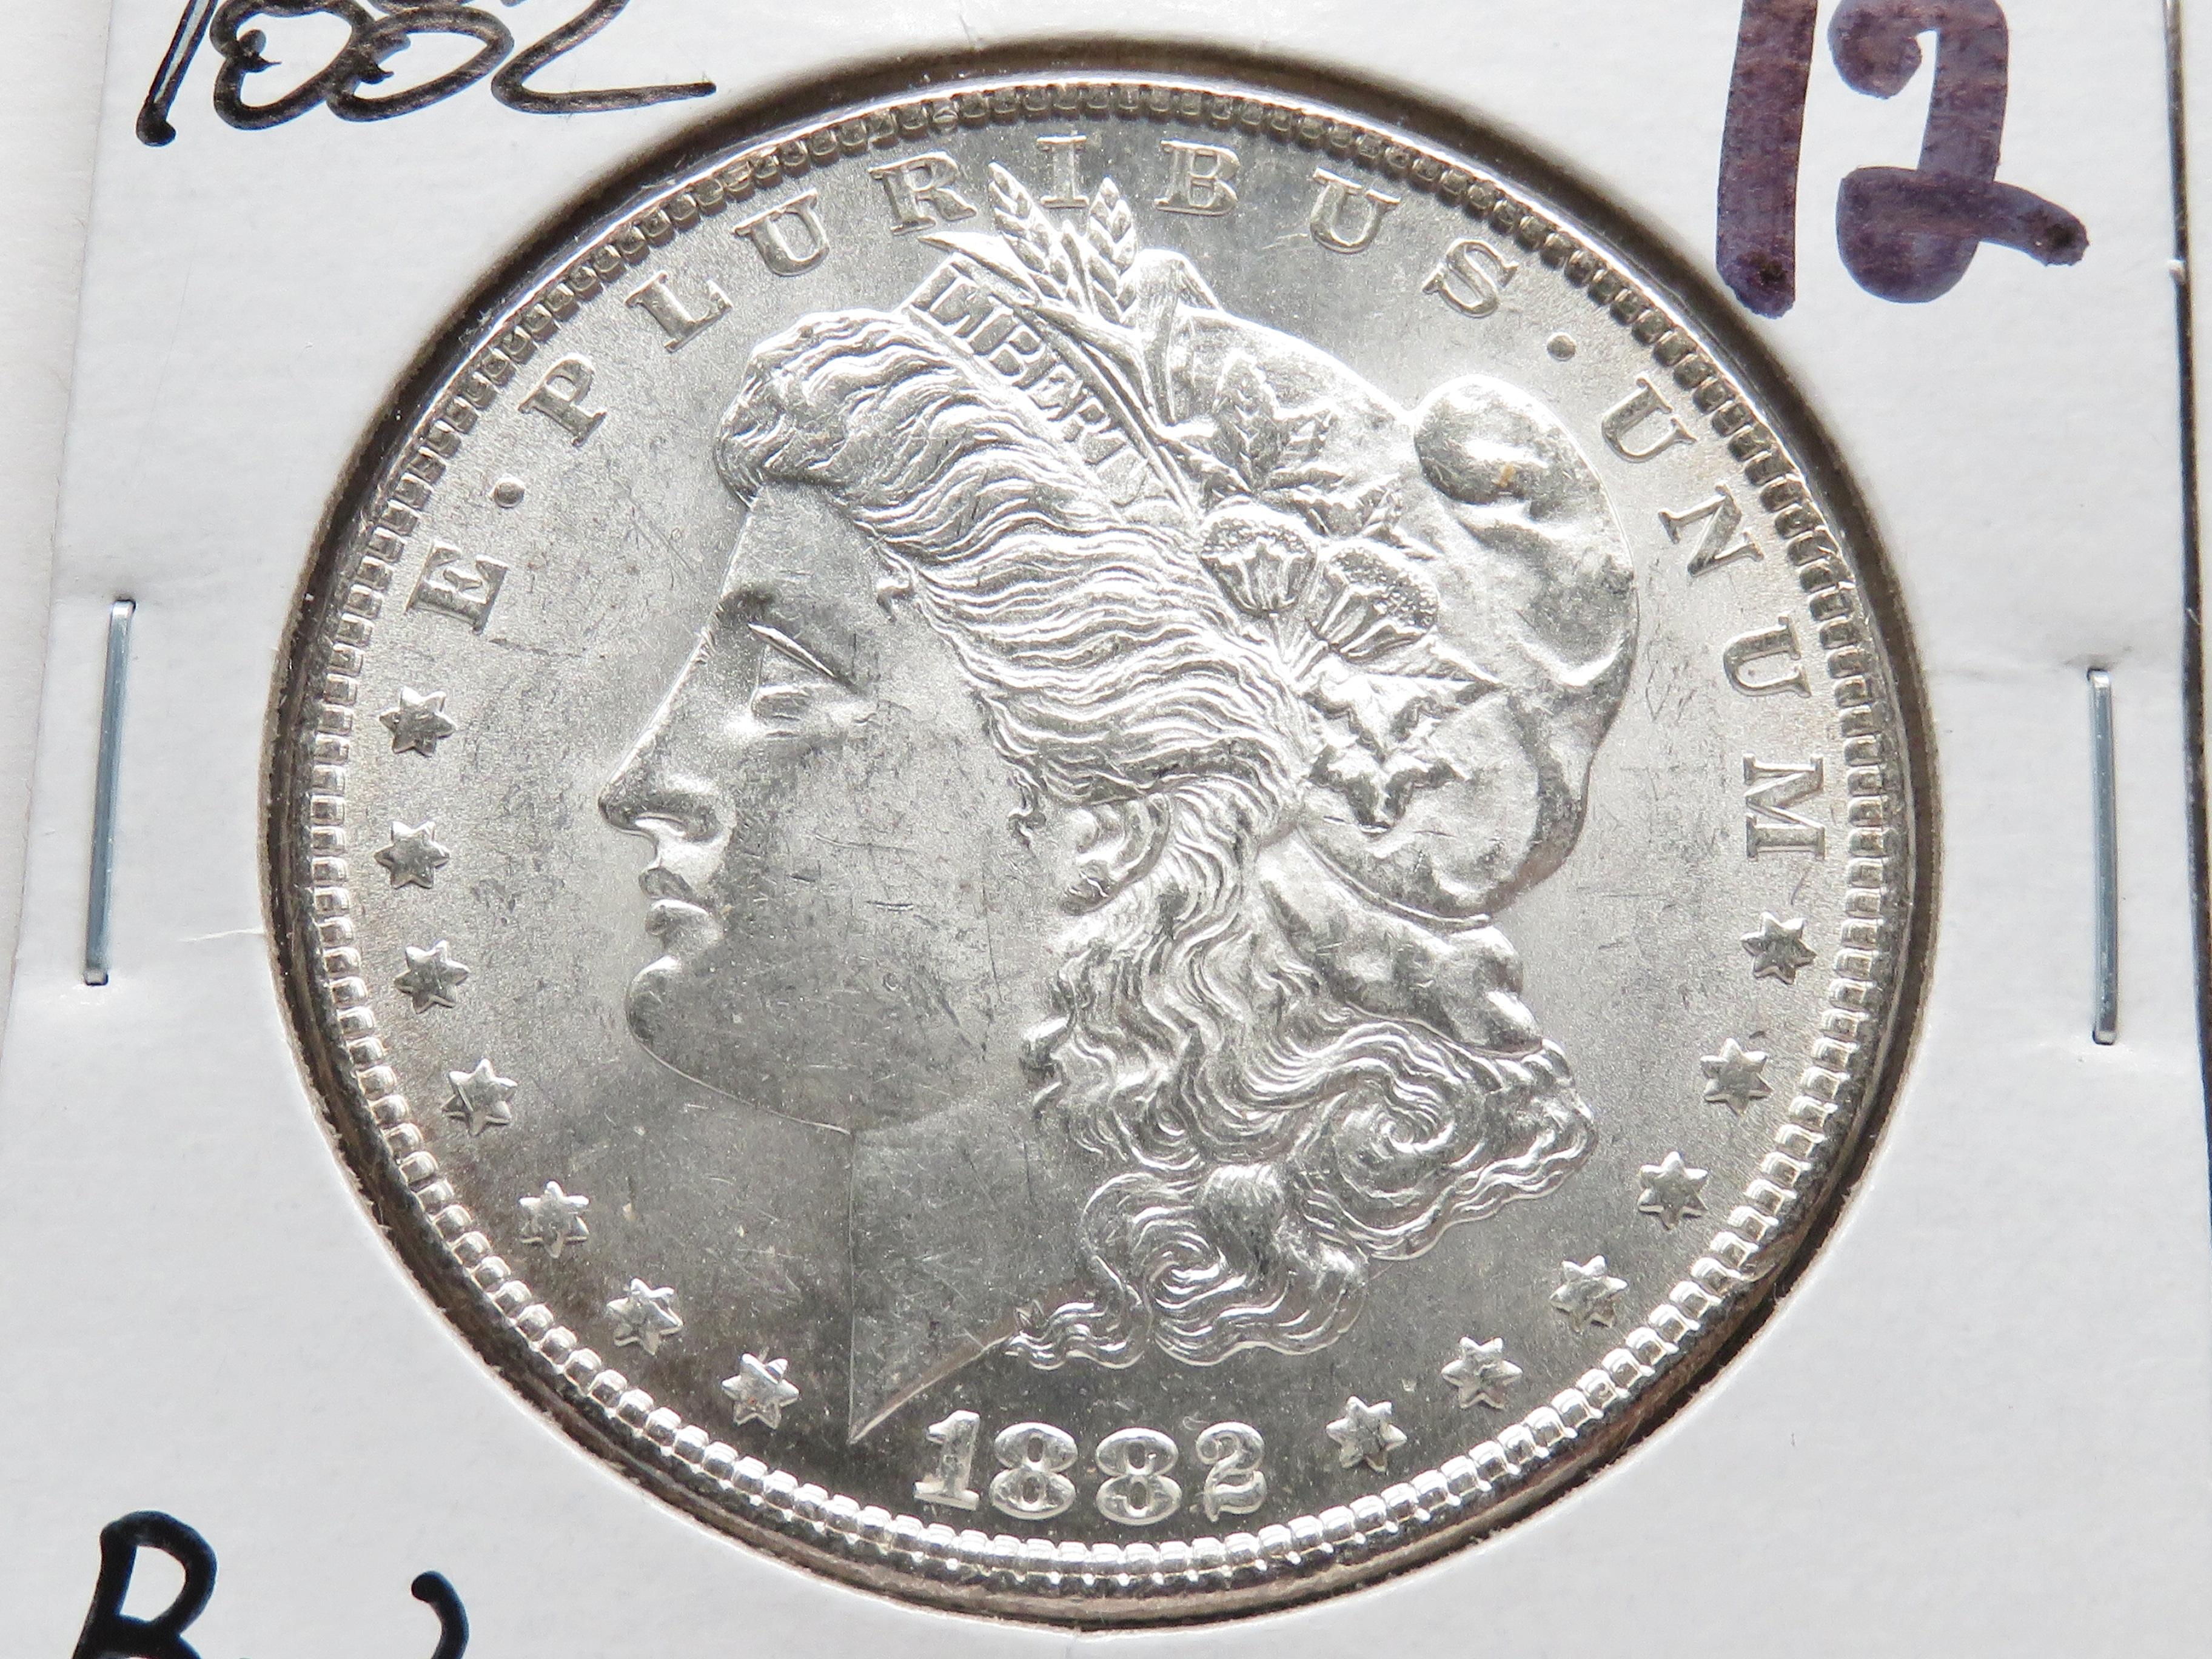 2 Morgan $: 1882 BU, 1882-O AU